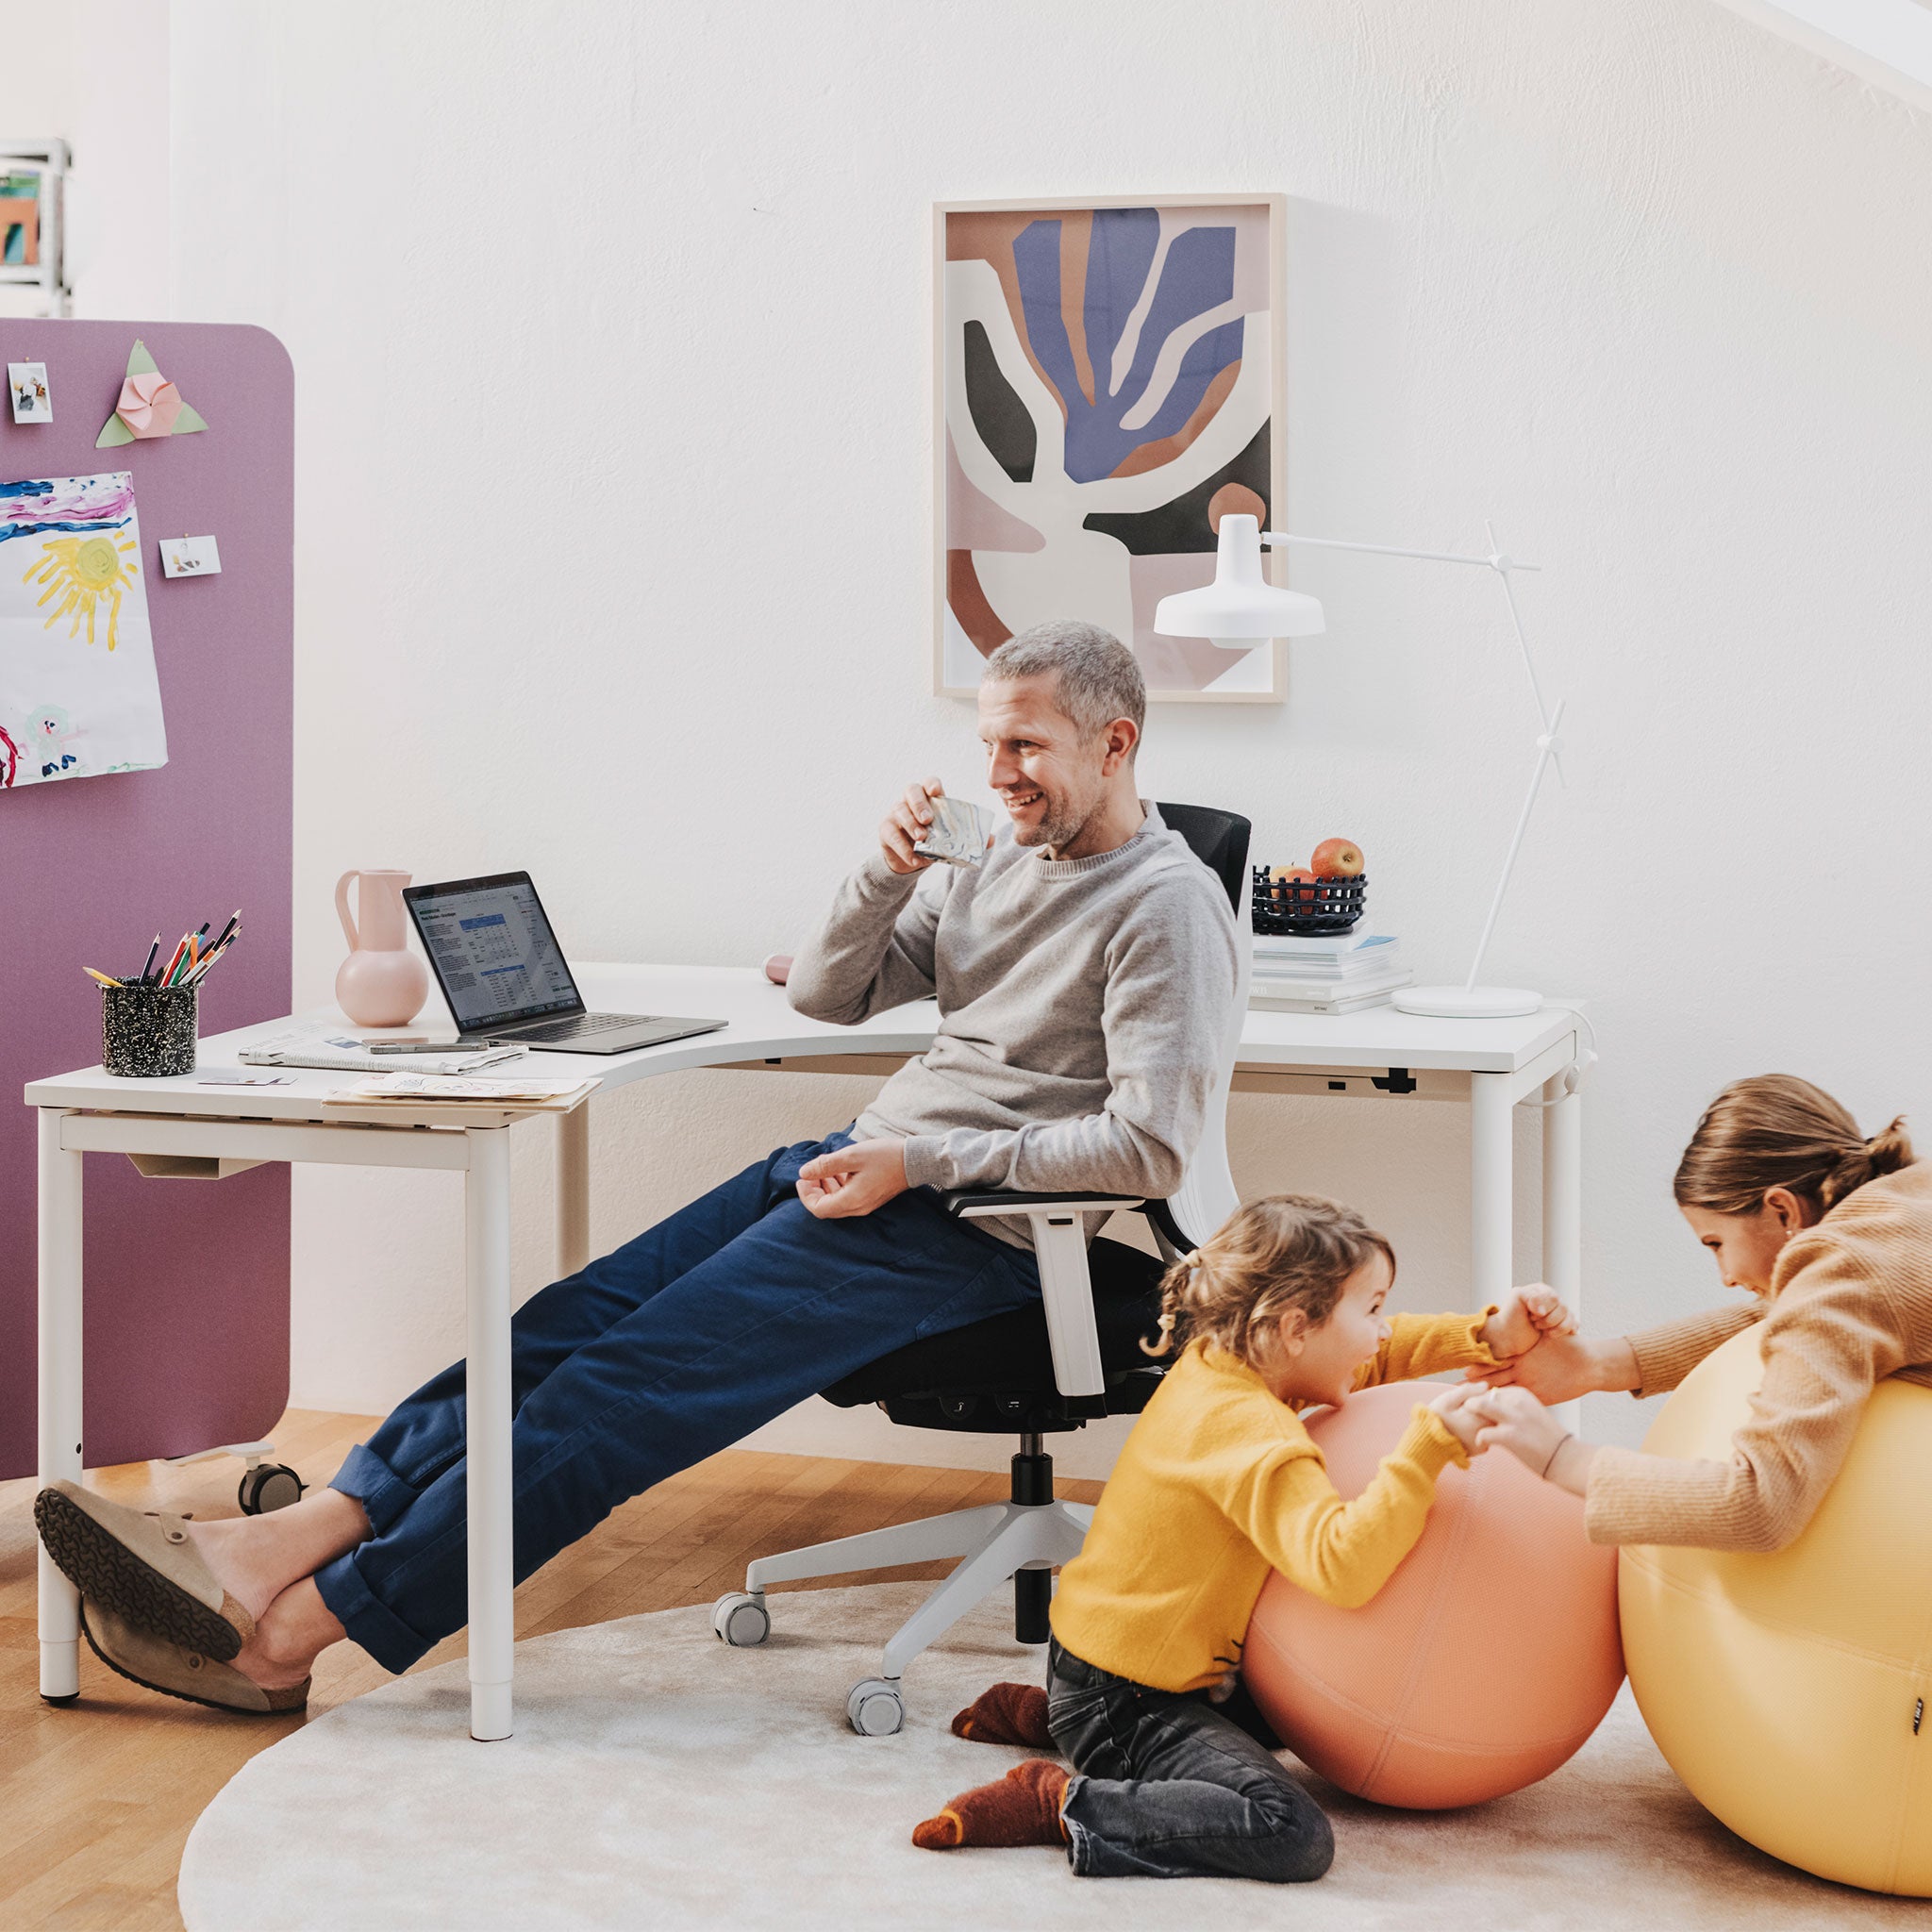 Man sieht einen Raum mit einem Arbeitsbereich, in dem ein Eckarbeitstisch mit Holztischplatte steht. Auf diesem befindet sich ein Laptop und Arbeitsutensilien. Davor sitzt ein älterer Mann, der in der rechten Hand ein Glas zum Mund hält. Rechts neben ihm spielen zwei Kinder auf zwei Sitzbällen.